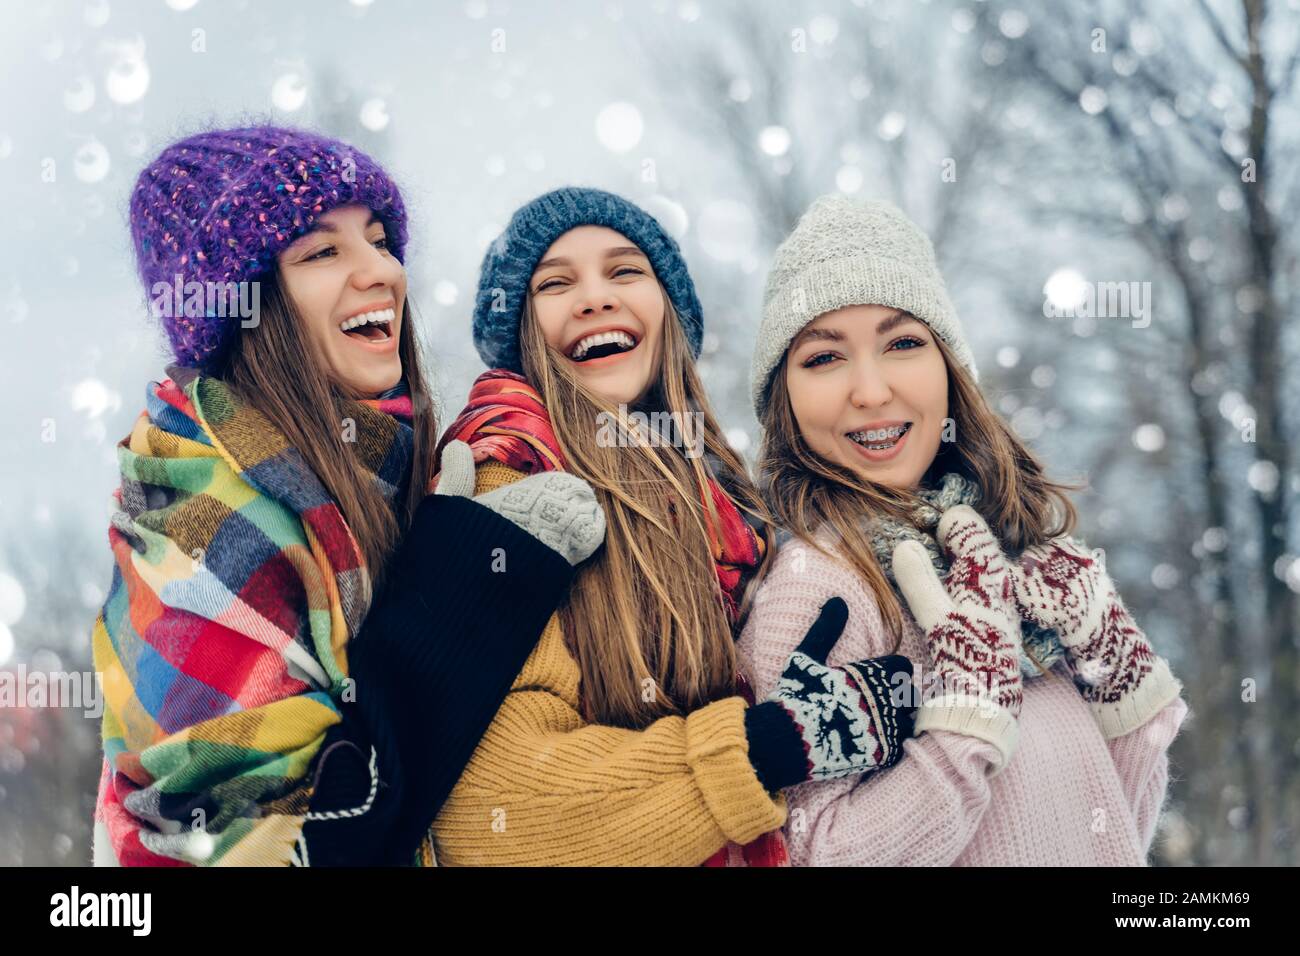 Drei Frauen Freunden sich im Freien in Strickmützen an, die bei schneebedecktem Wetter Spaß haben. Gruppe junger weiblicher Freunde im Winter im Freien. Stockfoto